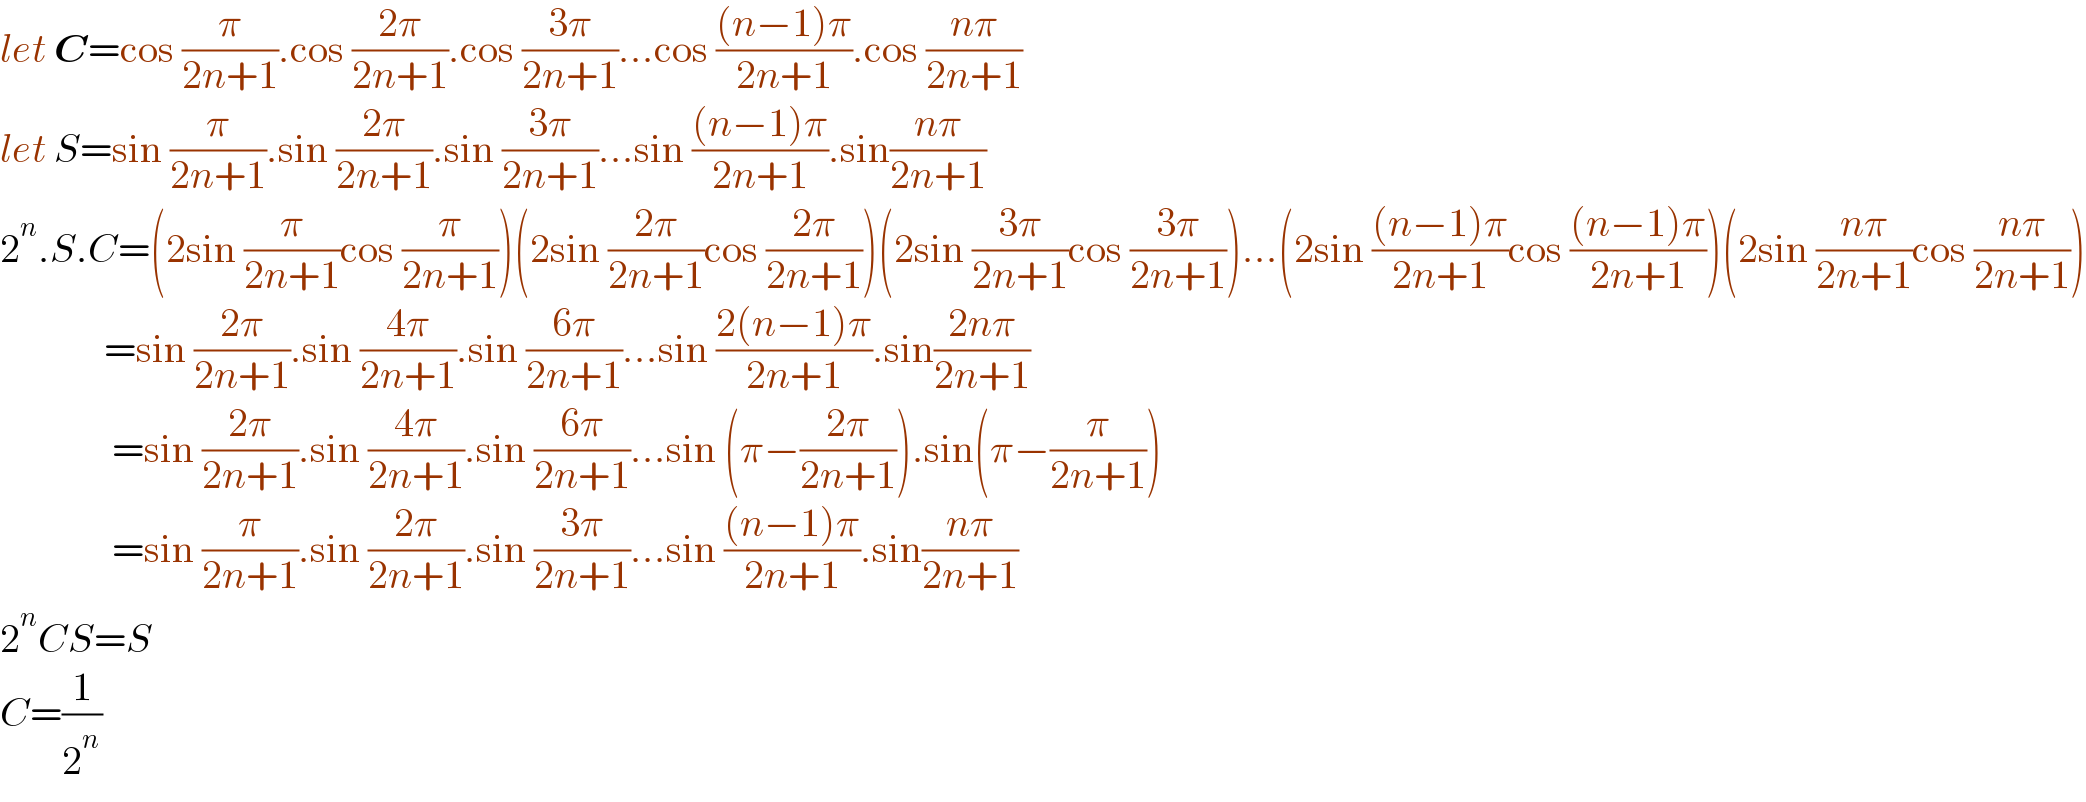 let C=cos (π/(2n+1)).cos ((2π)/(2n+1)).cos ((3π)/(2n+1))...cos (((n−1)π)/(2n+1)).cos ((nπ)/(2n+1))  let S=sin (π/(2n+1)).sin ((2π)/(2n+1)).sin ((3π)/(2n+1))...sin (((n−1)π)/(2n+1)).sin((nπ)/(2n+1))  2^n .S.C=(2sin (π/(2n+1))cos (π/(2n+1)))(2sin ((2π)/(2n+1))cos ((2π)/(2n+1)))(2sin ((3π)/(2n+1))cos ((3π)/(2n+1)))...(2sin (((n−1)π)/(2n+1))cos (((n−1)π)/(2n+1)))(2sin ((nπ)/(2n+1))cos ((nπ)/(2n+1)))               =sin ((2π)/(2n+1)).sin ((4π)/(2n+1)).sin ((6π)/(2n+1))...sin ((2(n−1)π)/(2n+1)).sin((2nπ)/(2n+1))                =sin ((2π)/(2n+1)).sin ((4π)/(2n+1)).sin ((6π)/(2n+1))...sin (π−((2π)/(2n+1))).sin(π−(π/(2n+1)))                =sin (π/(2n+1)).sin ((2π)/(2n+1)).sin ((3π)/(2n+1))...sin (((n−1)π)/(2n+1)).sin((nπ)/(2n+1))  2^n CS=S  C=(1/2^n )  